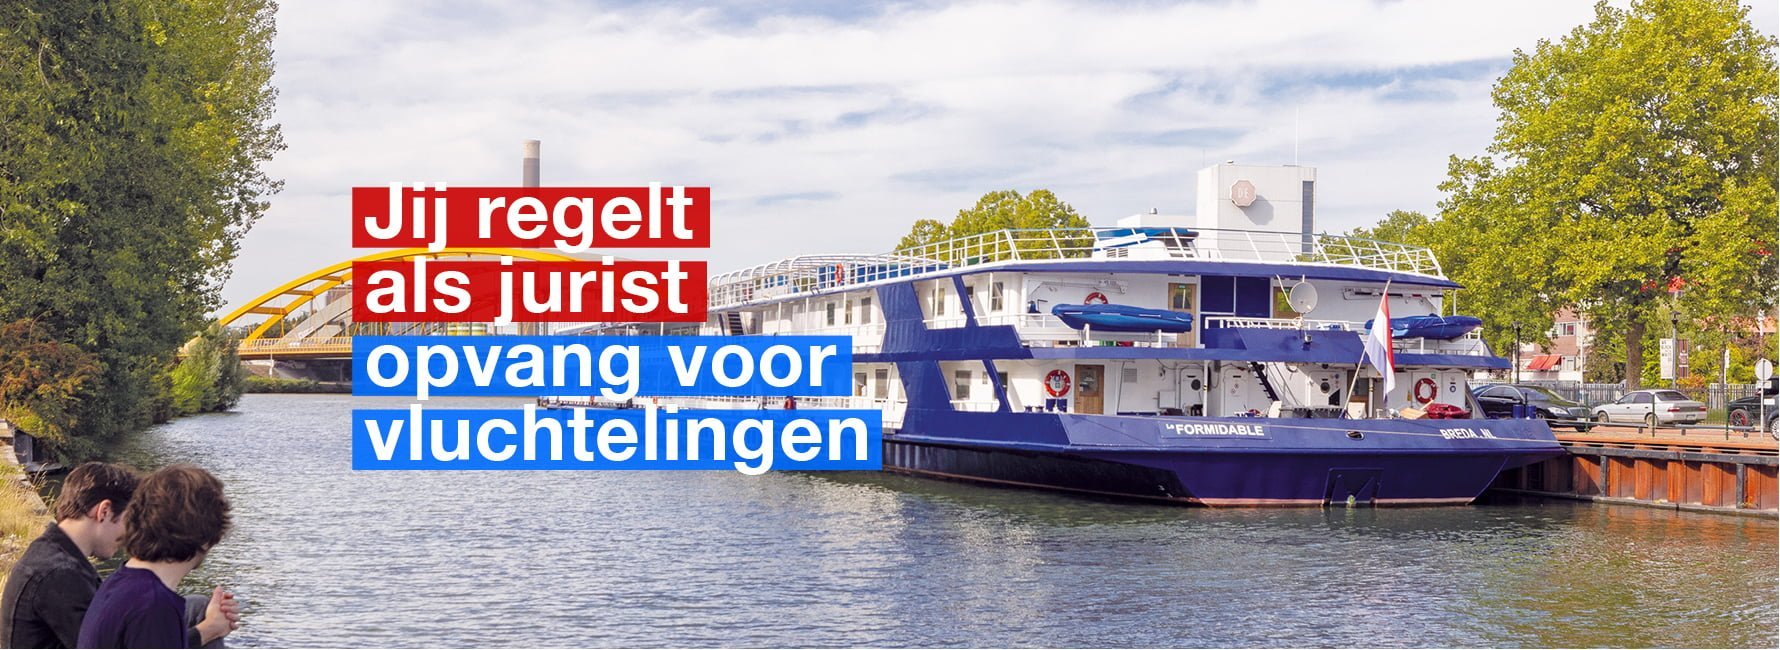 beeld van de opvangboot voor vluchtelingen in Utrecht